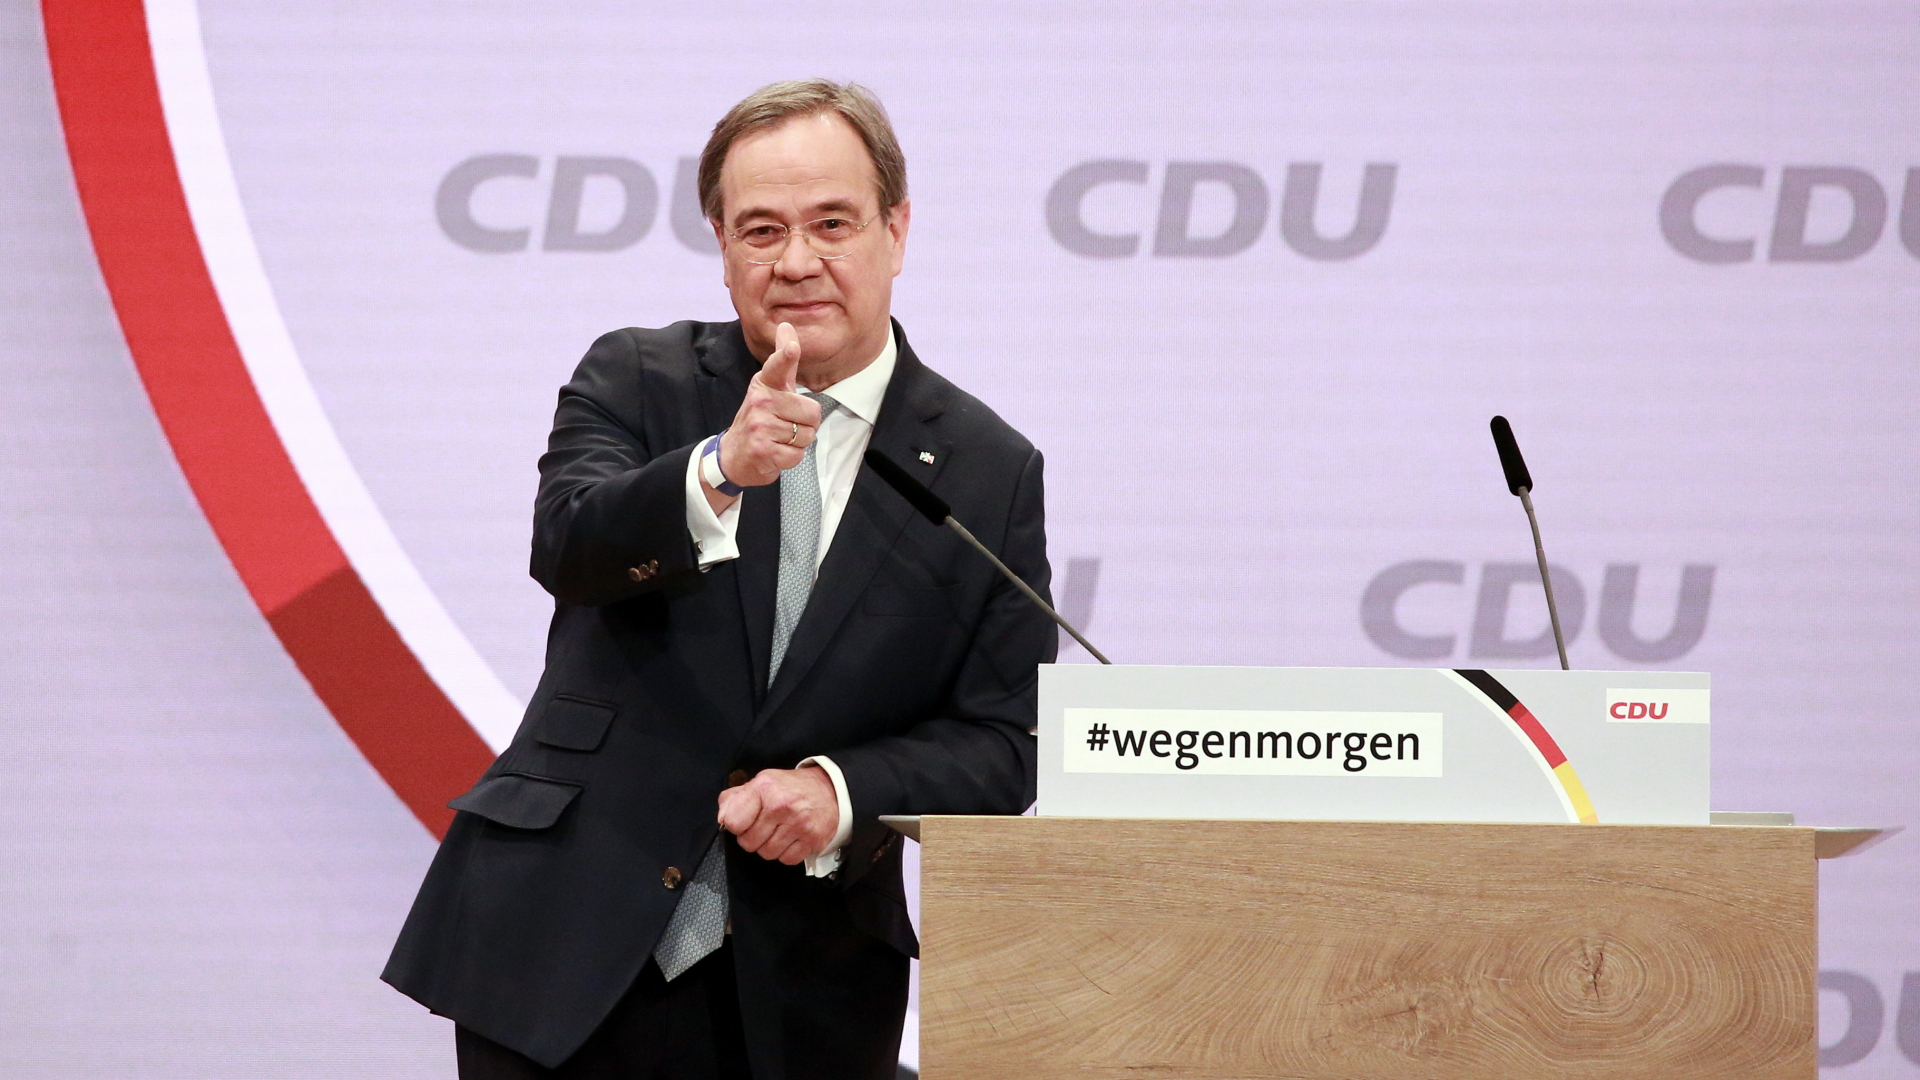 Die Erkenntnisse vom CDU-Parteitag. | CHRISTIAN MARQUARDT/POOL/EPA-EFE